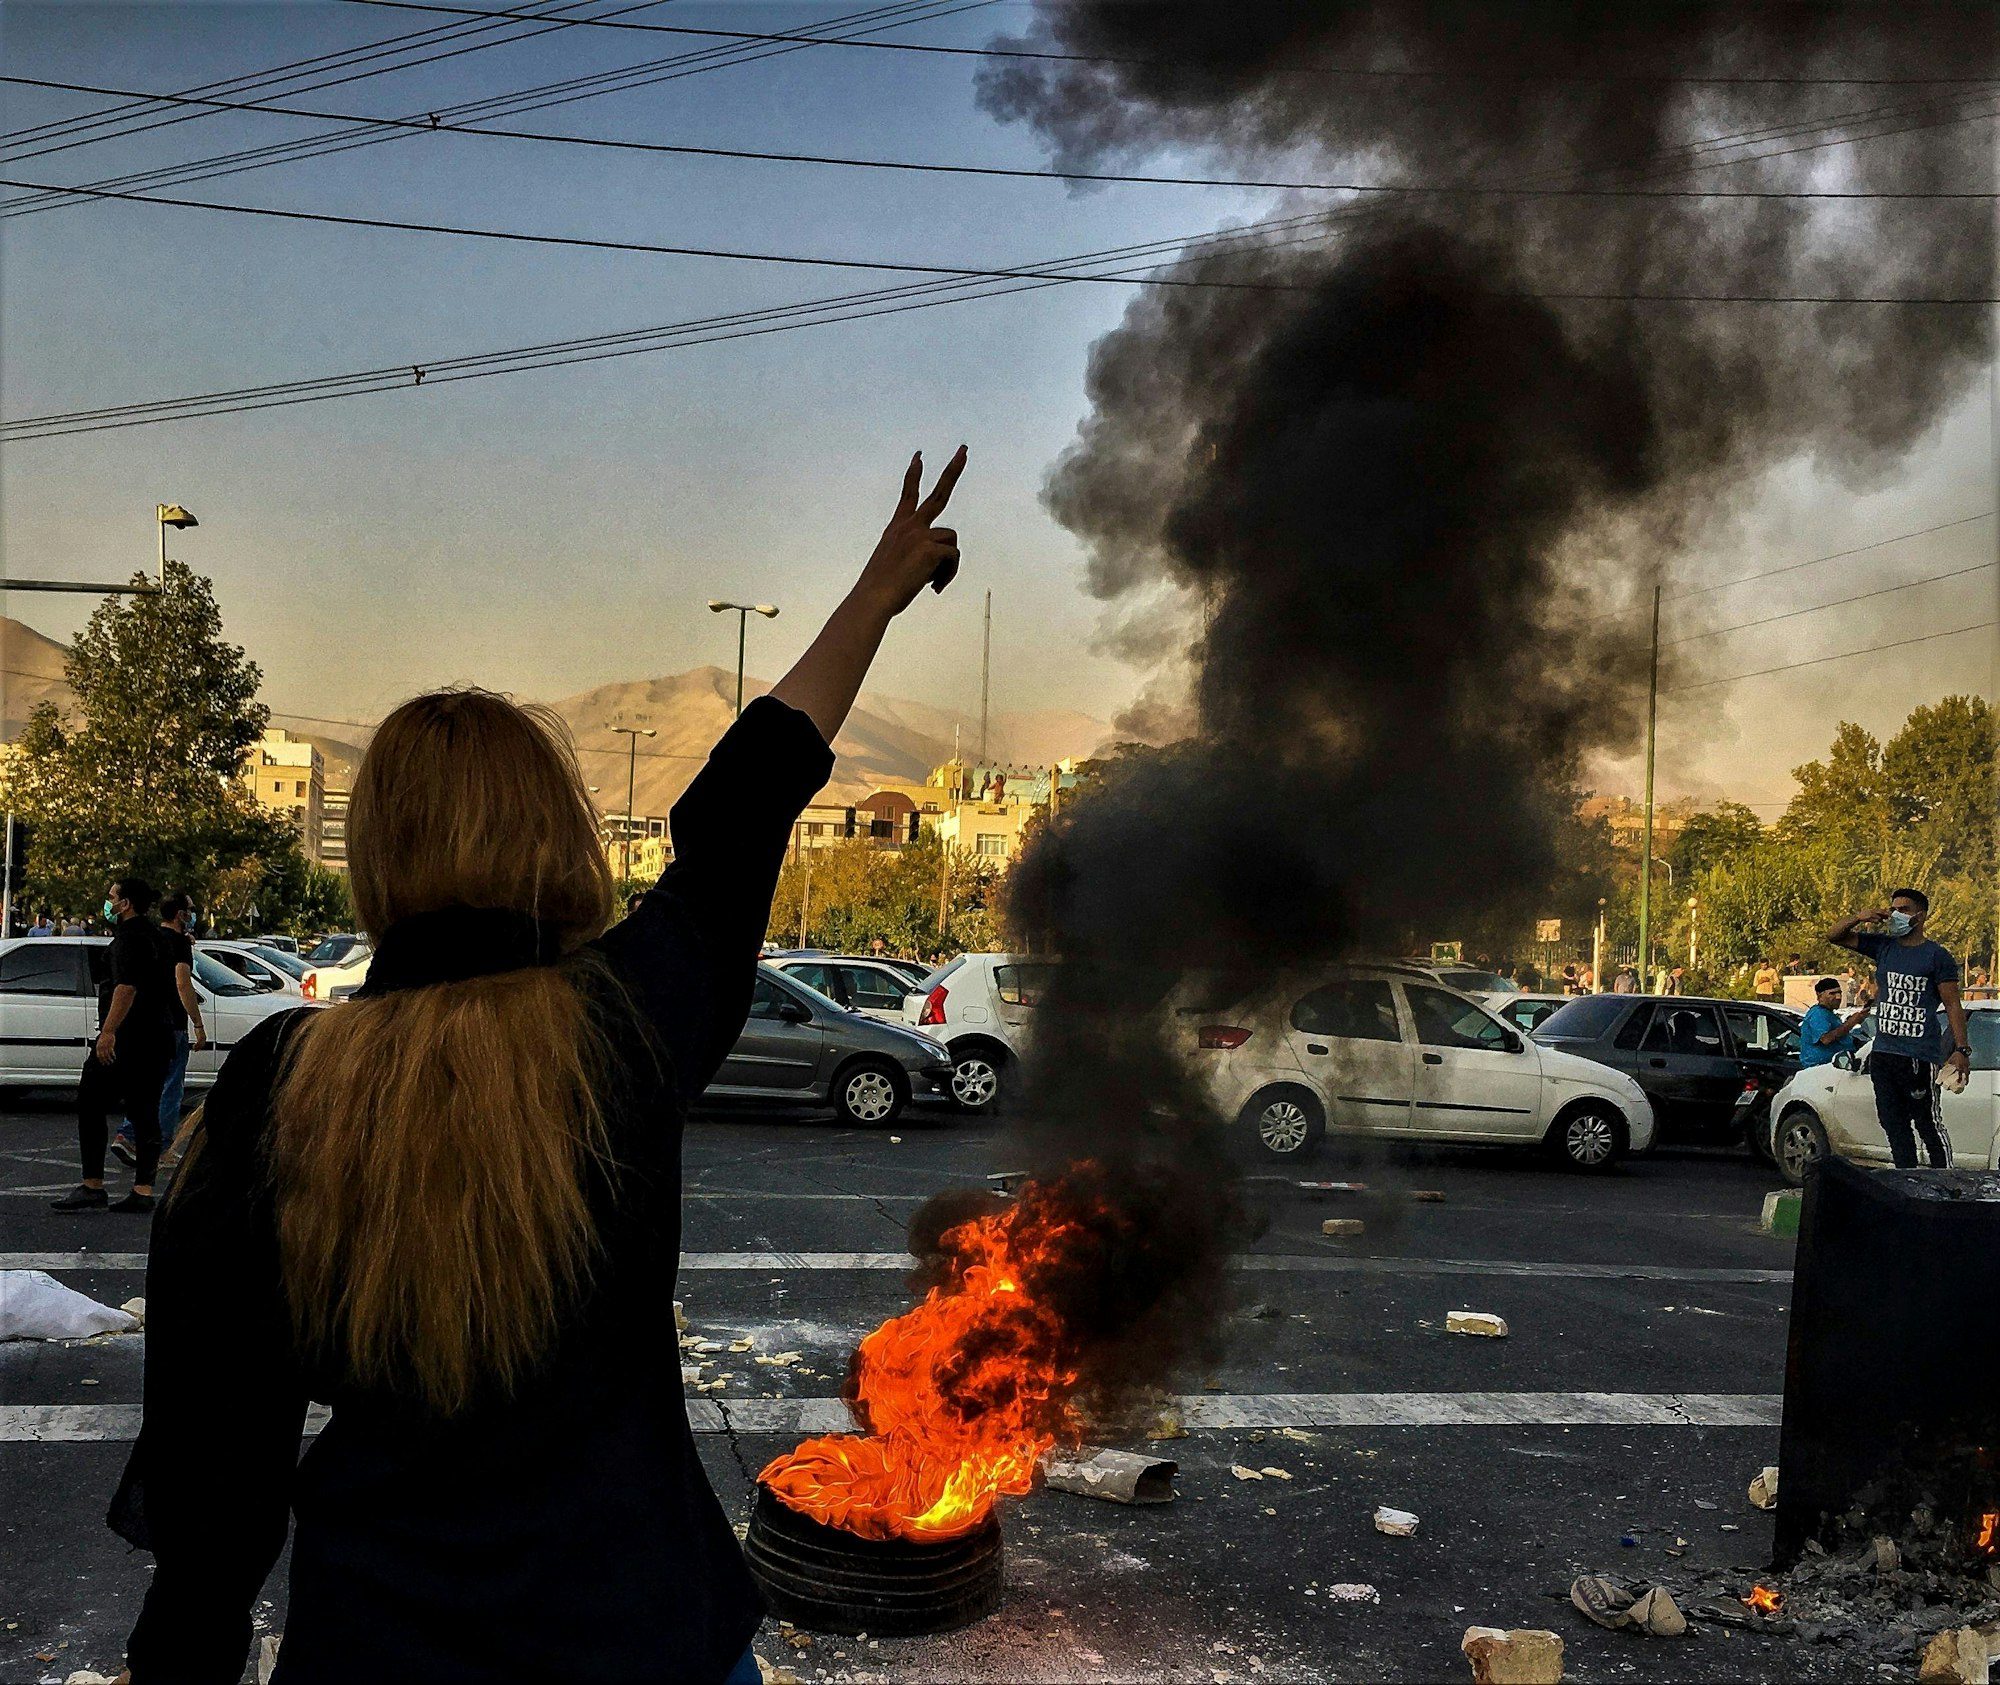 30.09.2022, Iran, Teheran: Eine Frau steht während einer Demonstration nach dem Tod der 22-jährigen Mahsa Amini vor einem brennenden Autoreifen und zeigt das Victory-Zeichen.